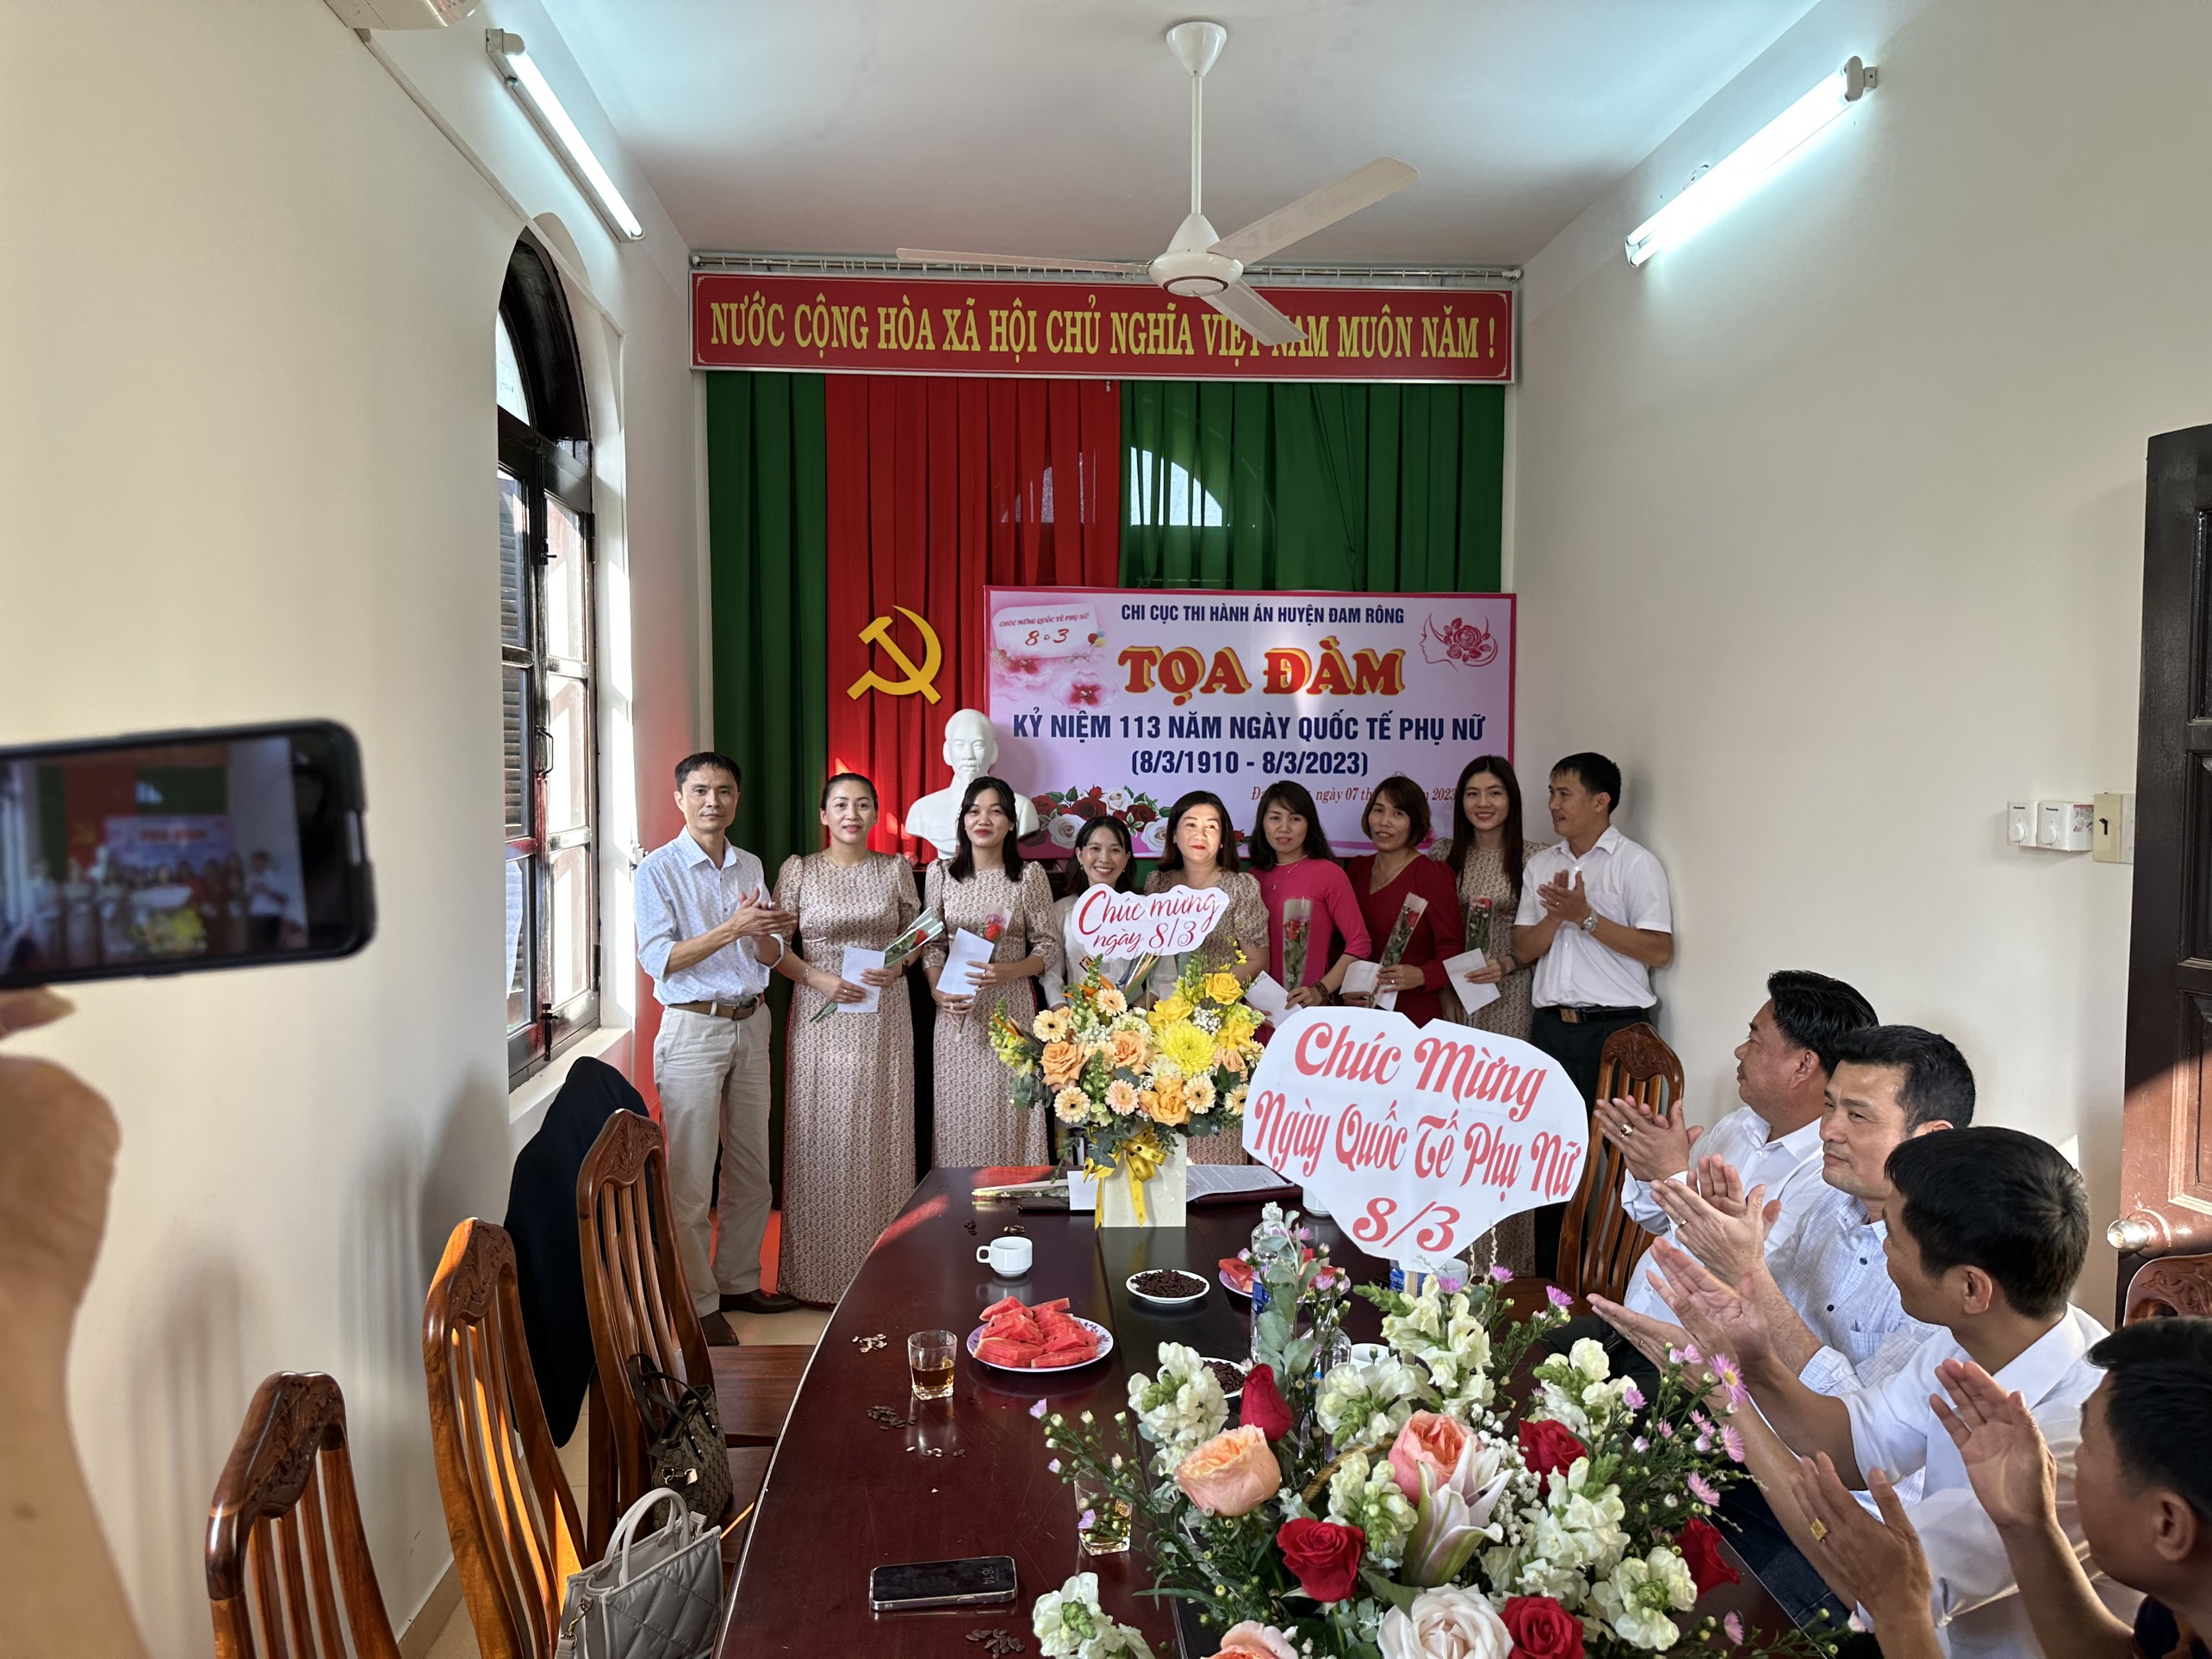 Chi cục thi hành án dân sự huyện Lâm Hà, Đam Rông Kỷ niệm 113 năm Ngày Quốc tế Phụ nữ.